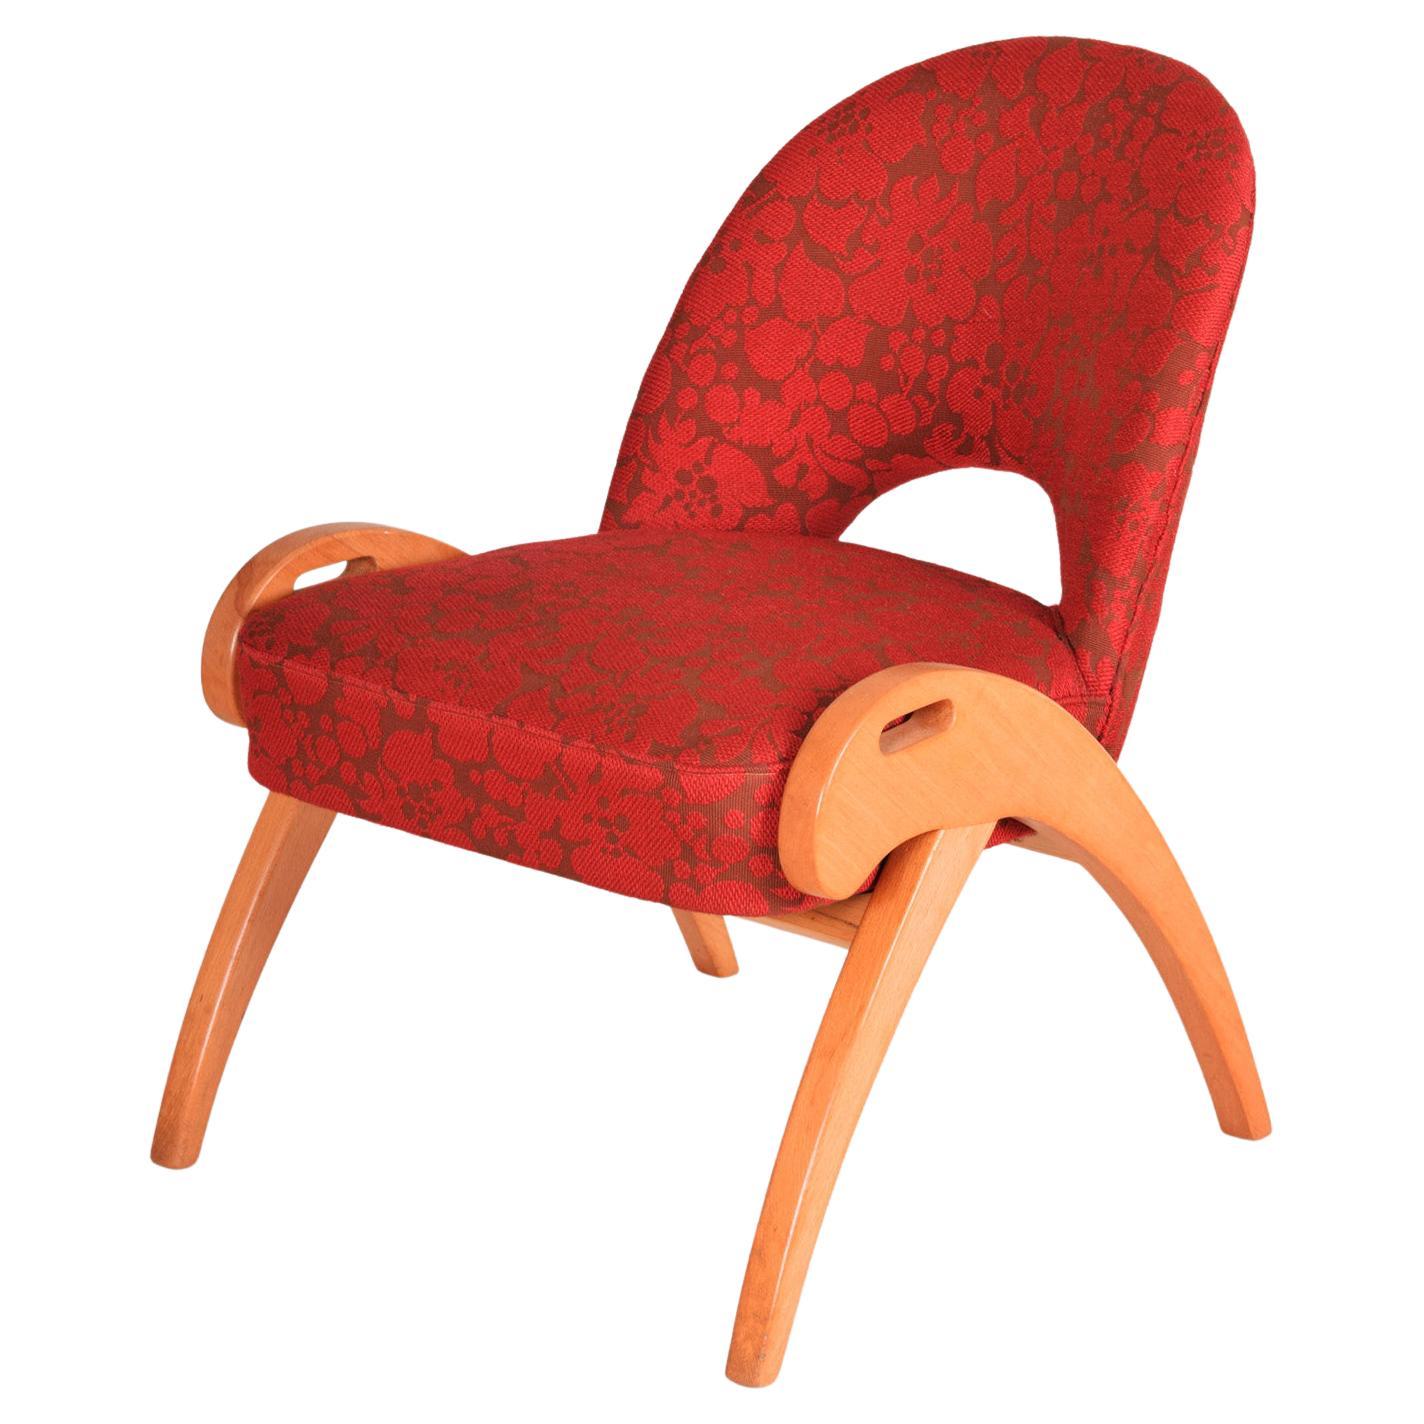 Roter Sessel aus der Mitte des Jahrhunderts, hergestellt in den 1950er Jahren in Tschechien, Buche, Originalzustand